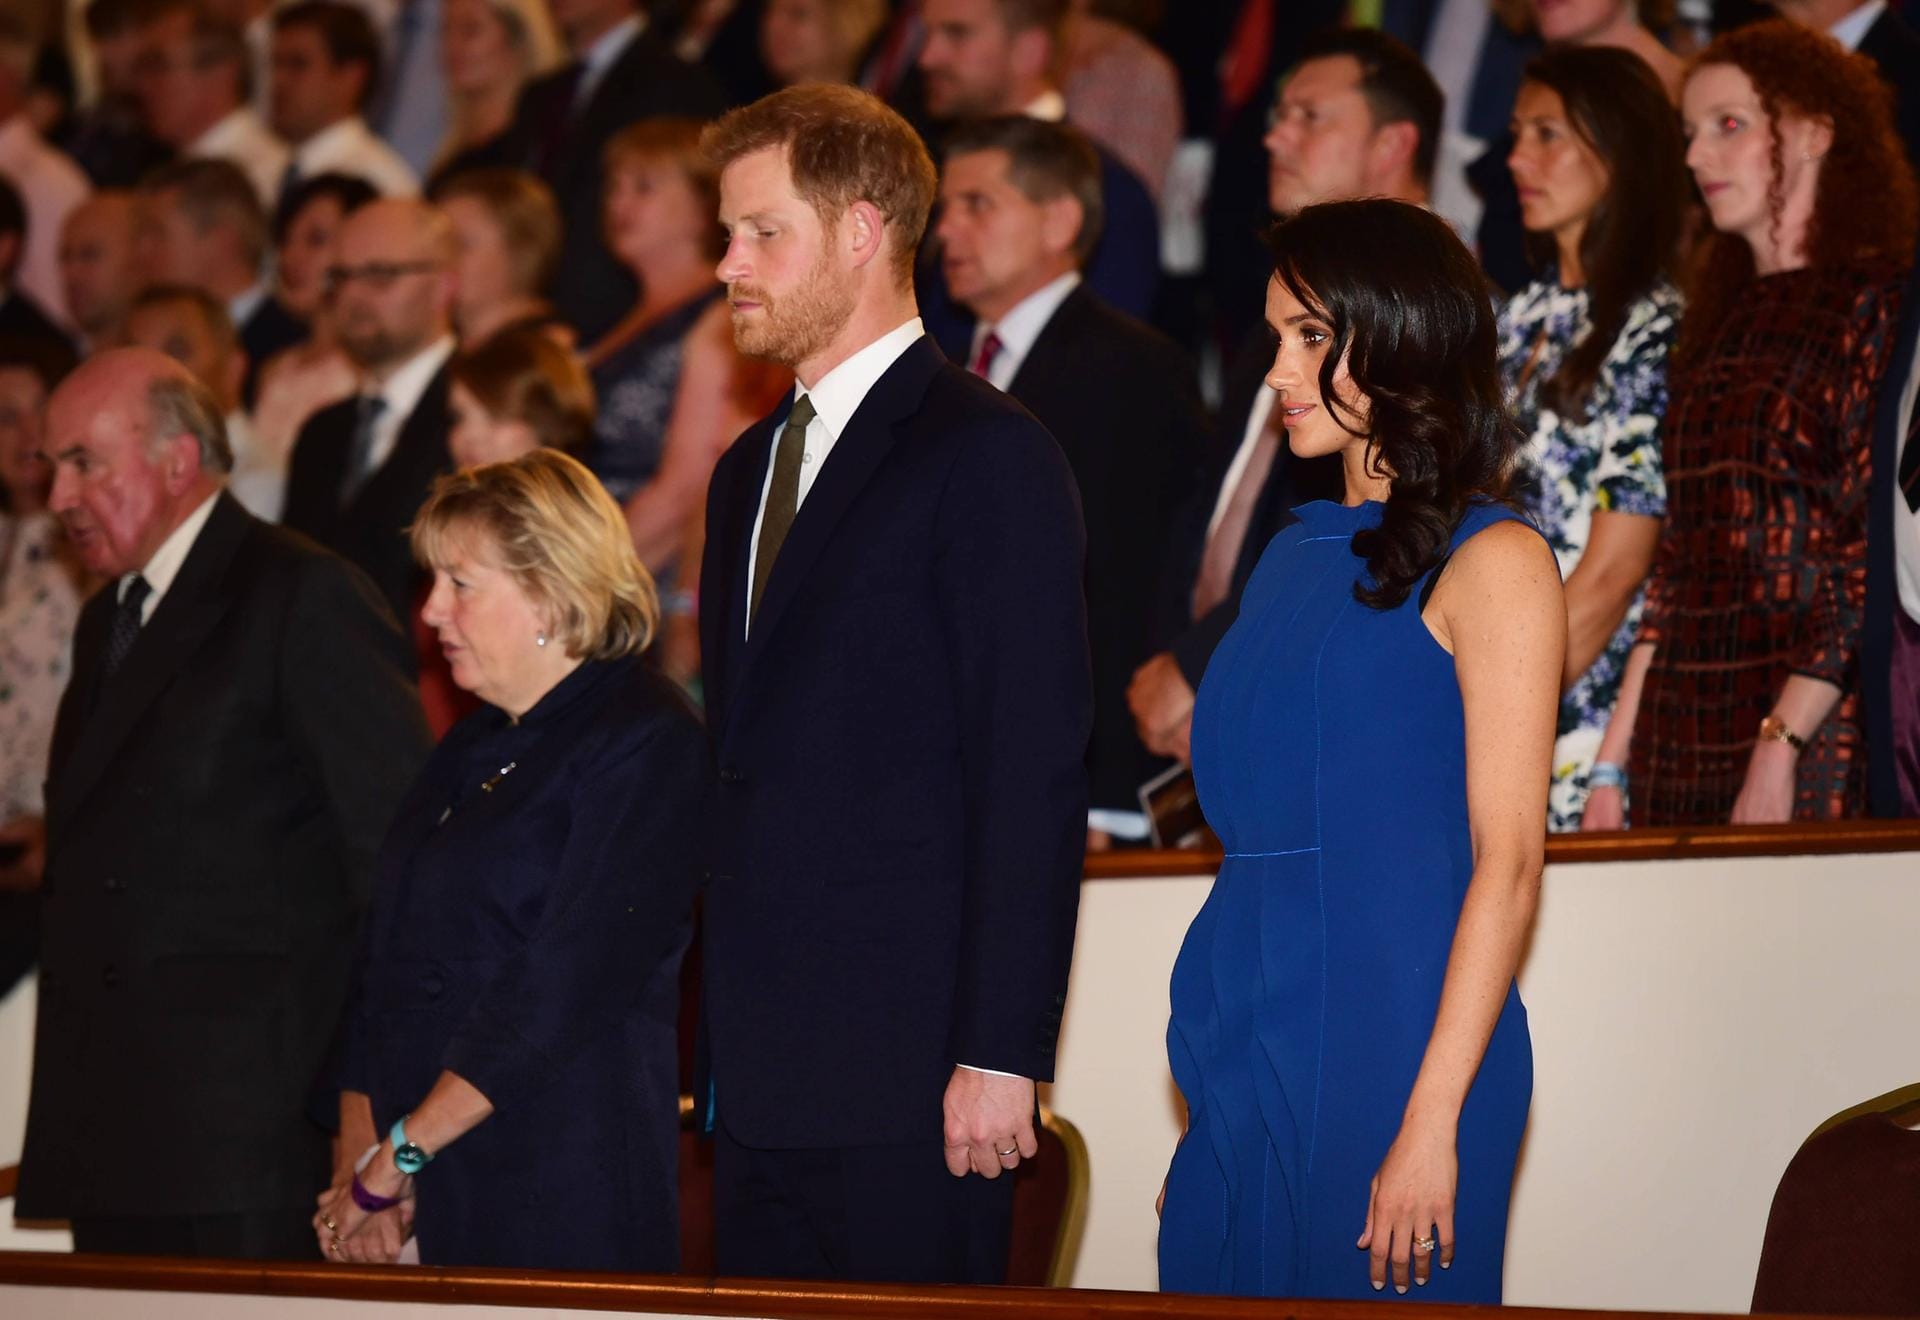 06. September 2018: Dieses royalblaue Kleid lässt die ehemalige "Suits"-Schauspielerin zum Kurvenwunder werden.